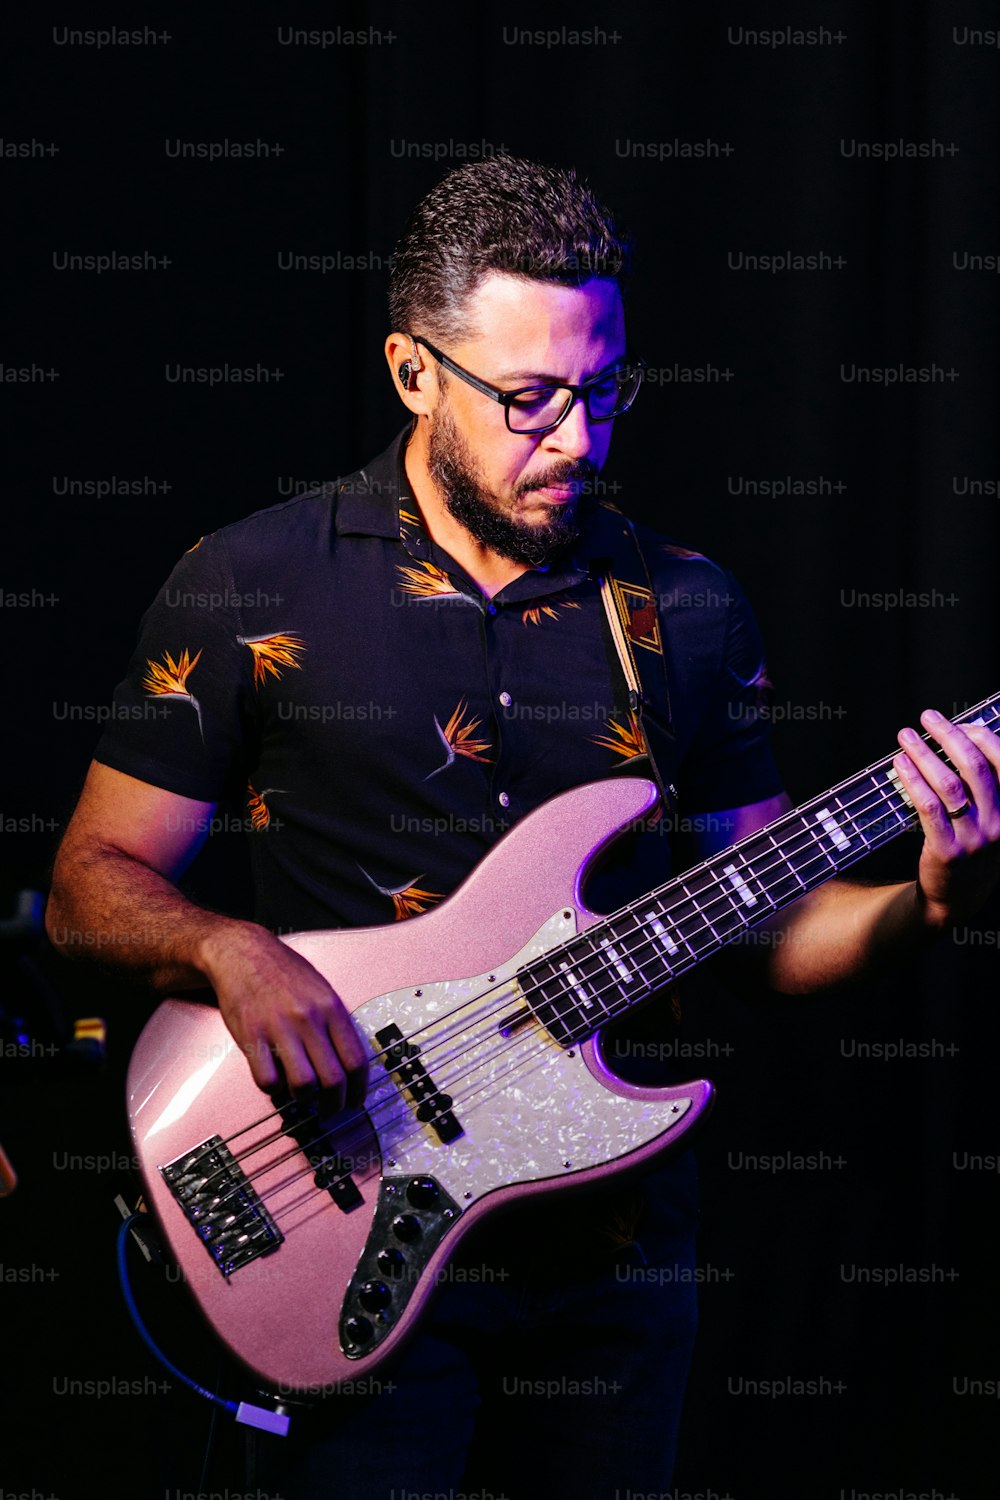 Un uomo con gli occhiali che suona una chitarra rosa